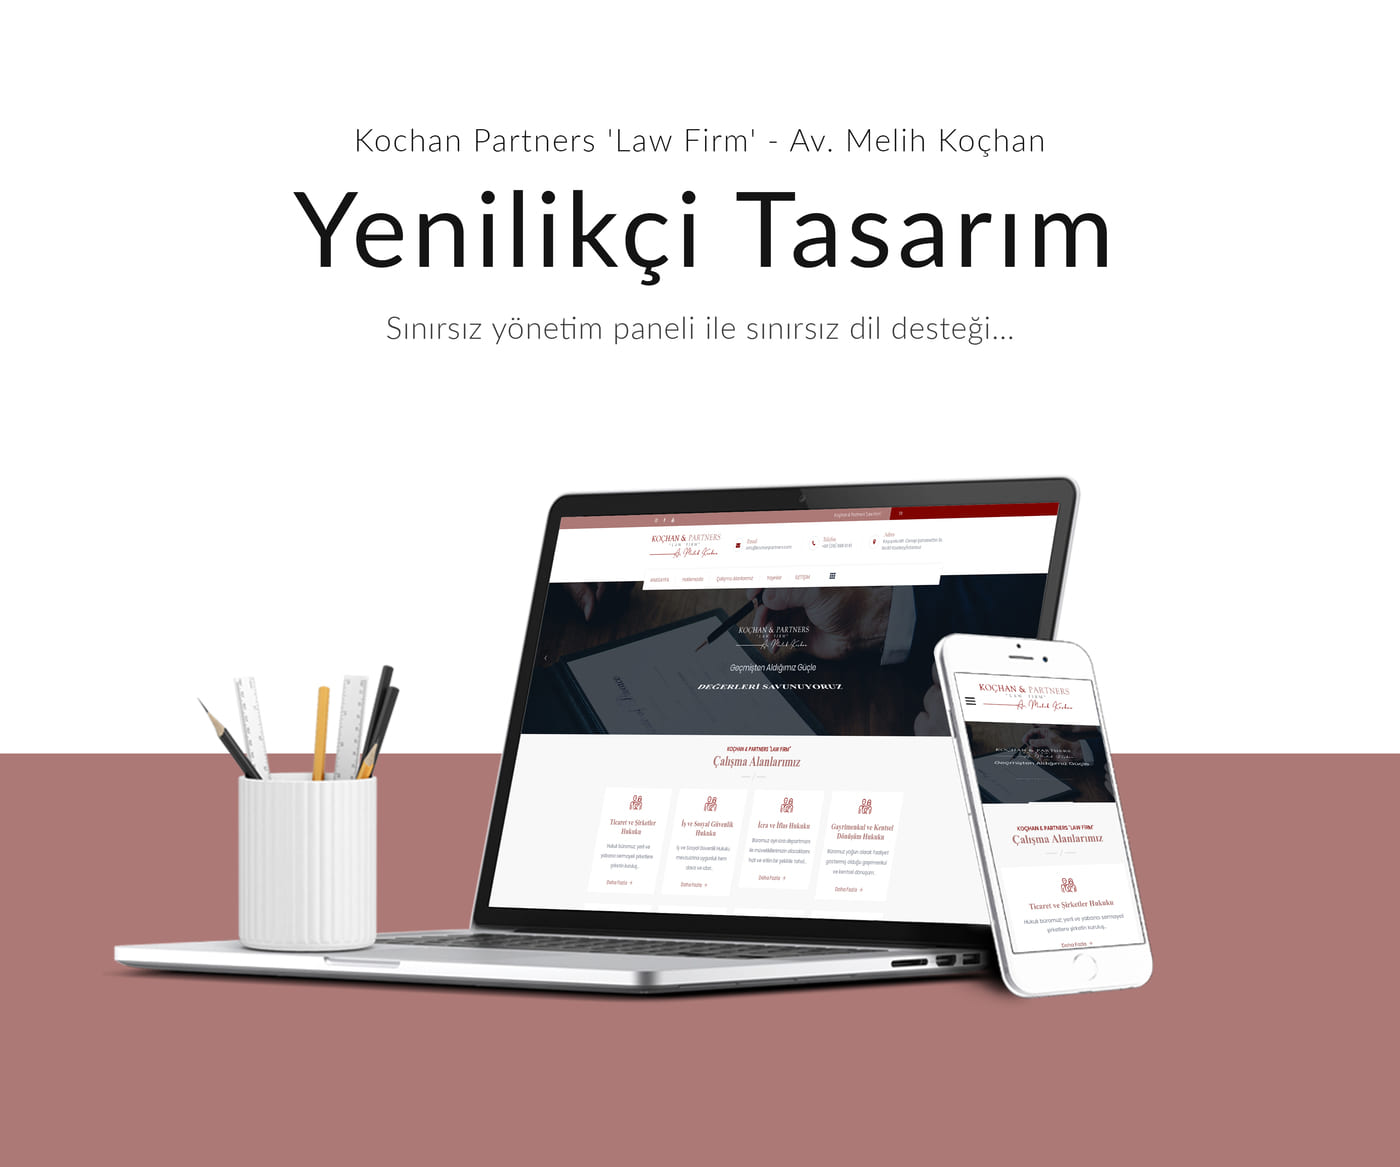 Kochan Partners 'Law Firm'  Av. Melih Koçhan